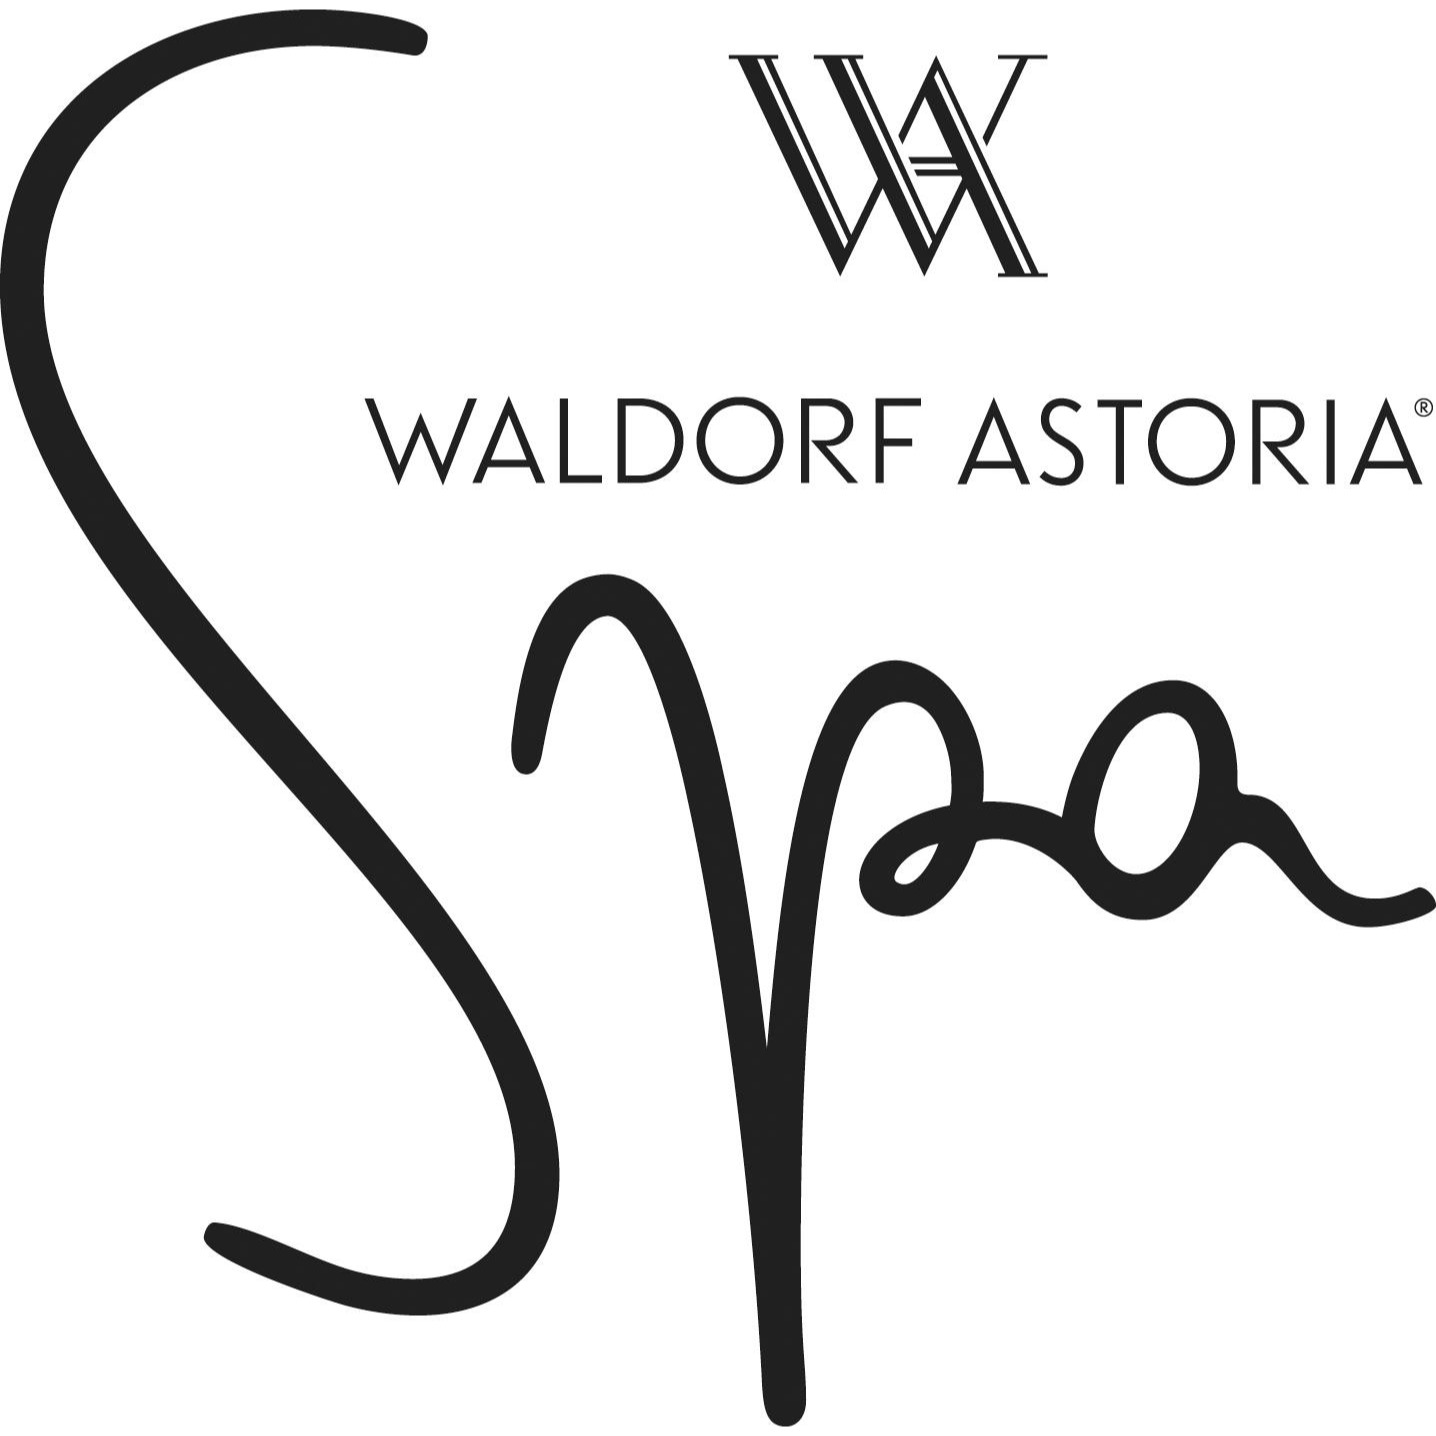 Waldorf Astoria Spa Chicago - Chicago, IL 60611 - (312)646-1310 | ShowMeLocal.com